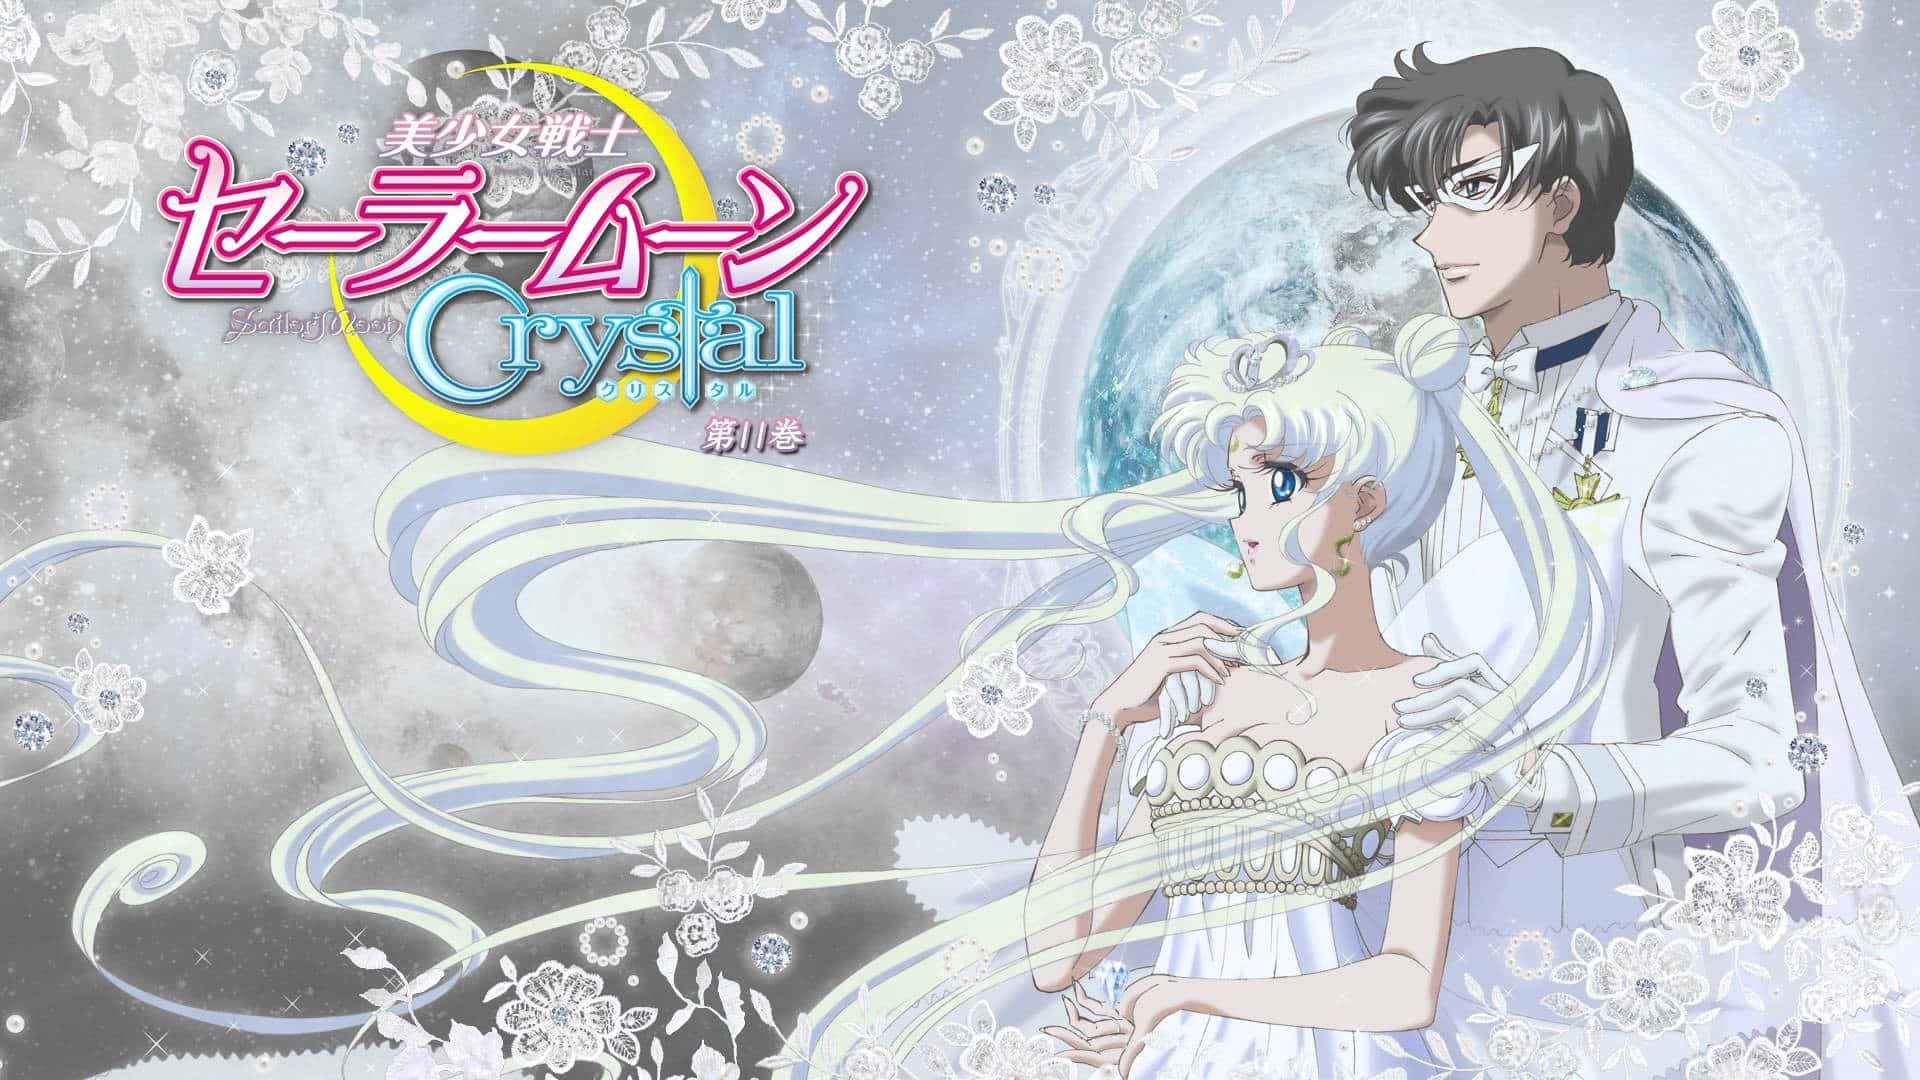 Usagitsukino Verwandelt Sich In Die Wunderschöne Sailor Moon, Um Die Welt Zu Retten. Wallpaper